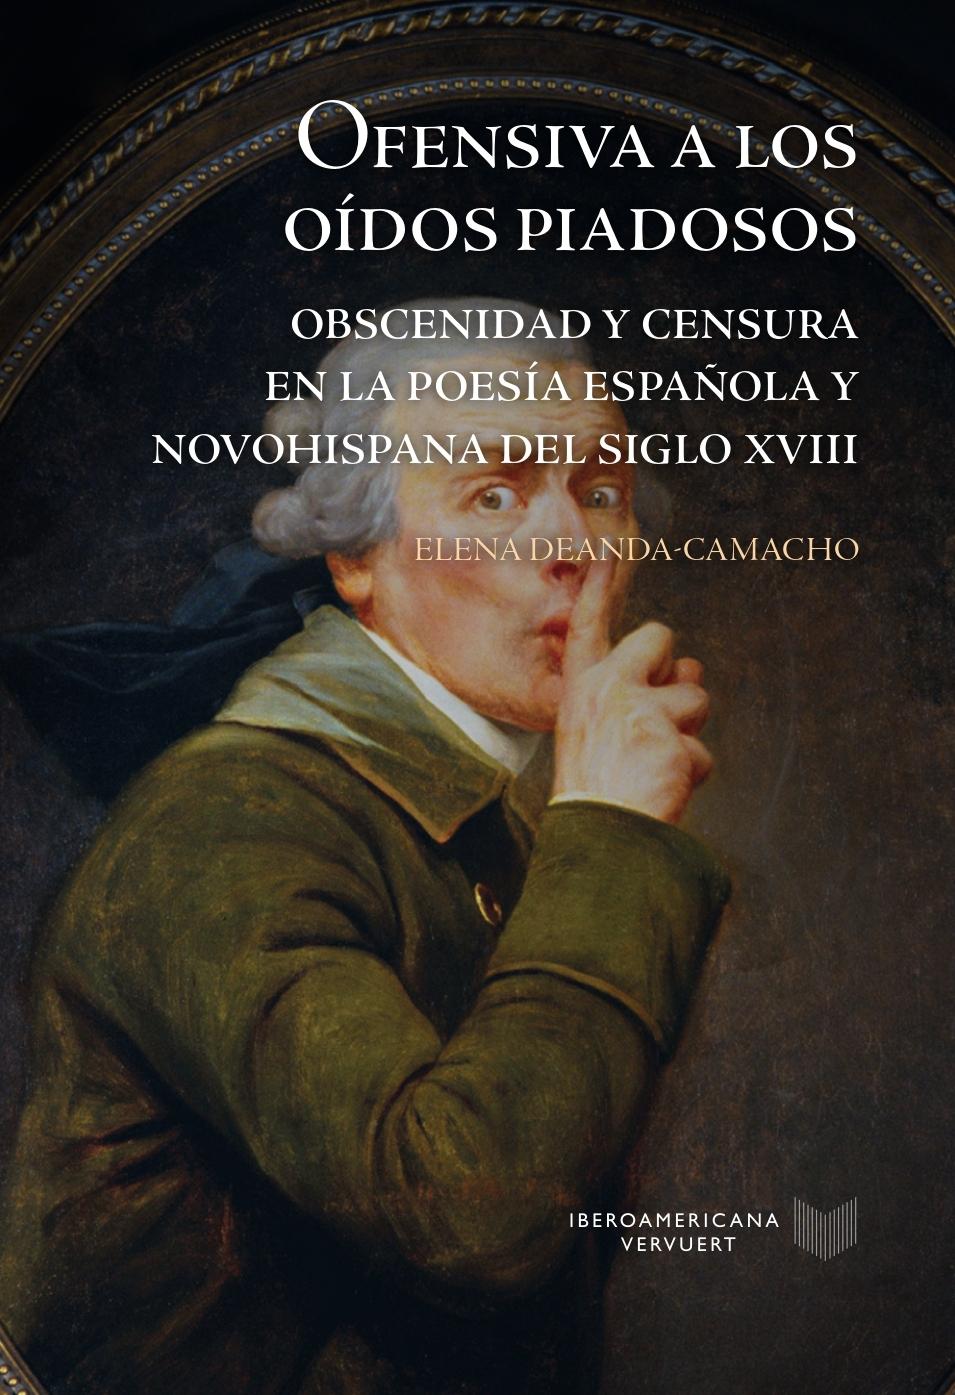 OFENSIVA A LOS OIDOS PIADOSOS "obscenidad y censura en la poesía española y novohispana del siglo XVIII"